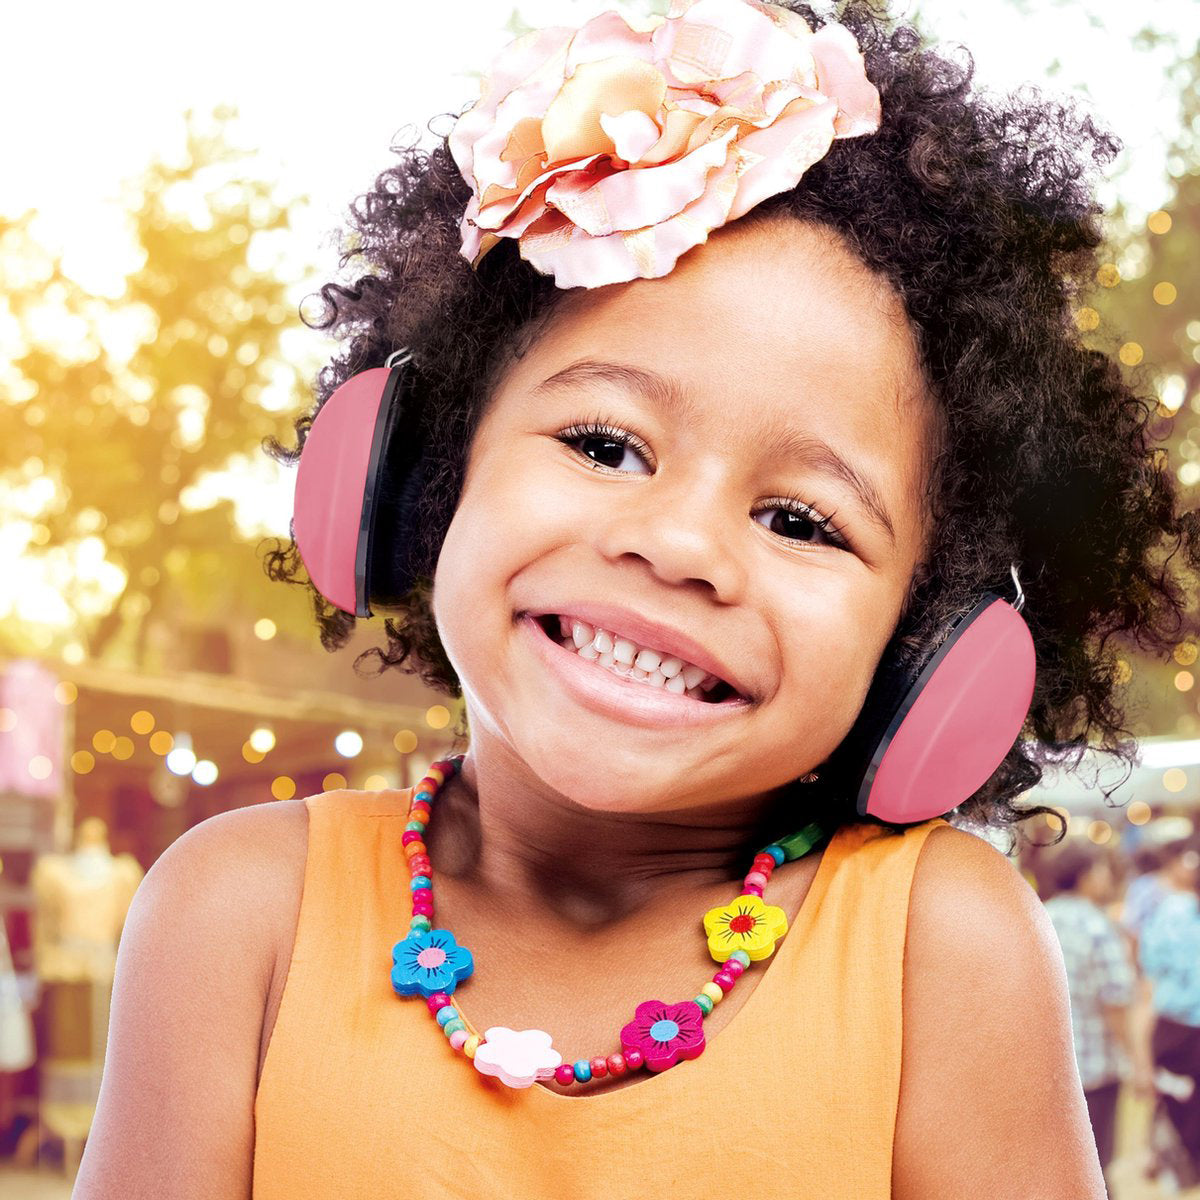 Bescherm het gehoor van je kleintje met Alecto oorbeschermers baby roze. Het gehoor van een kind is nog volop in ontwikkeling en daardoor natuurlijk minder goed bestand tegen hard geluid. VanZus